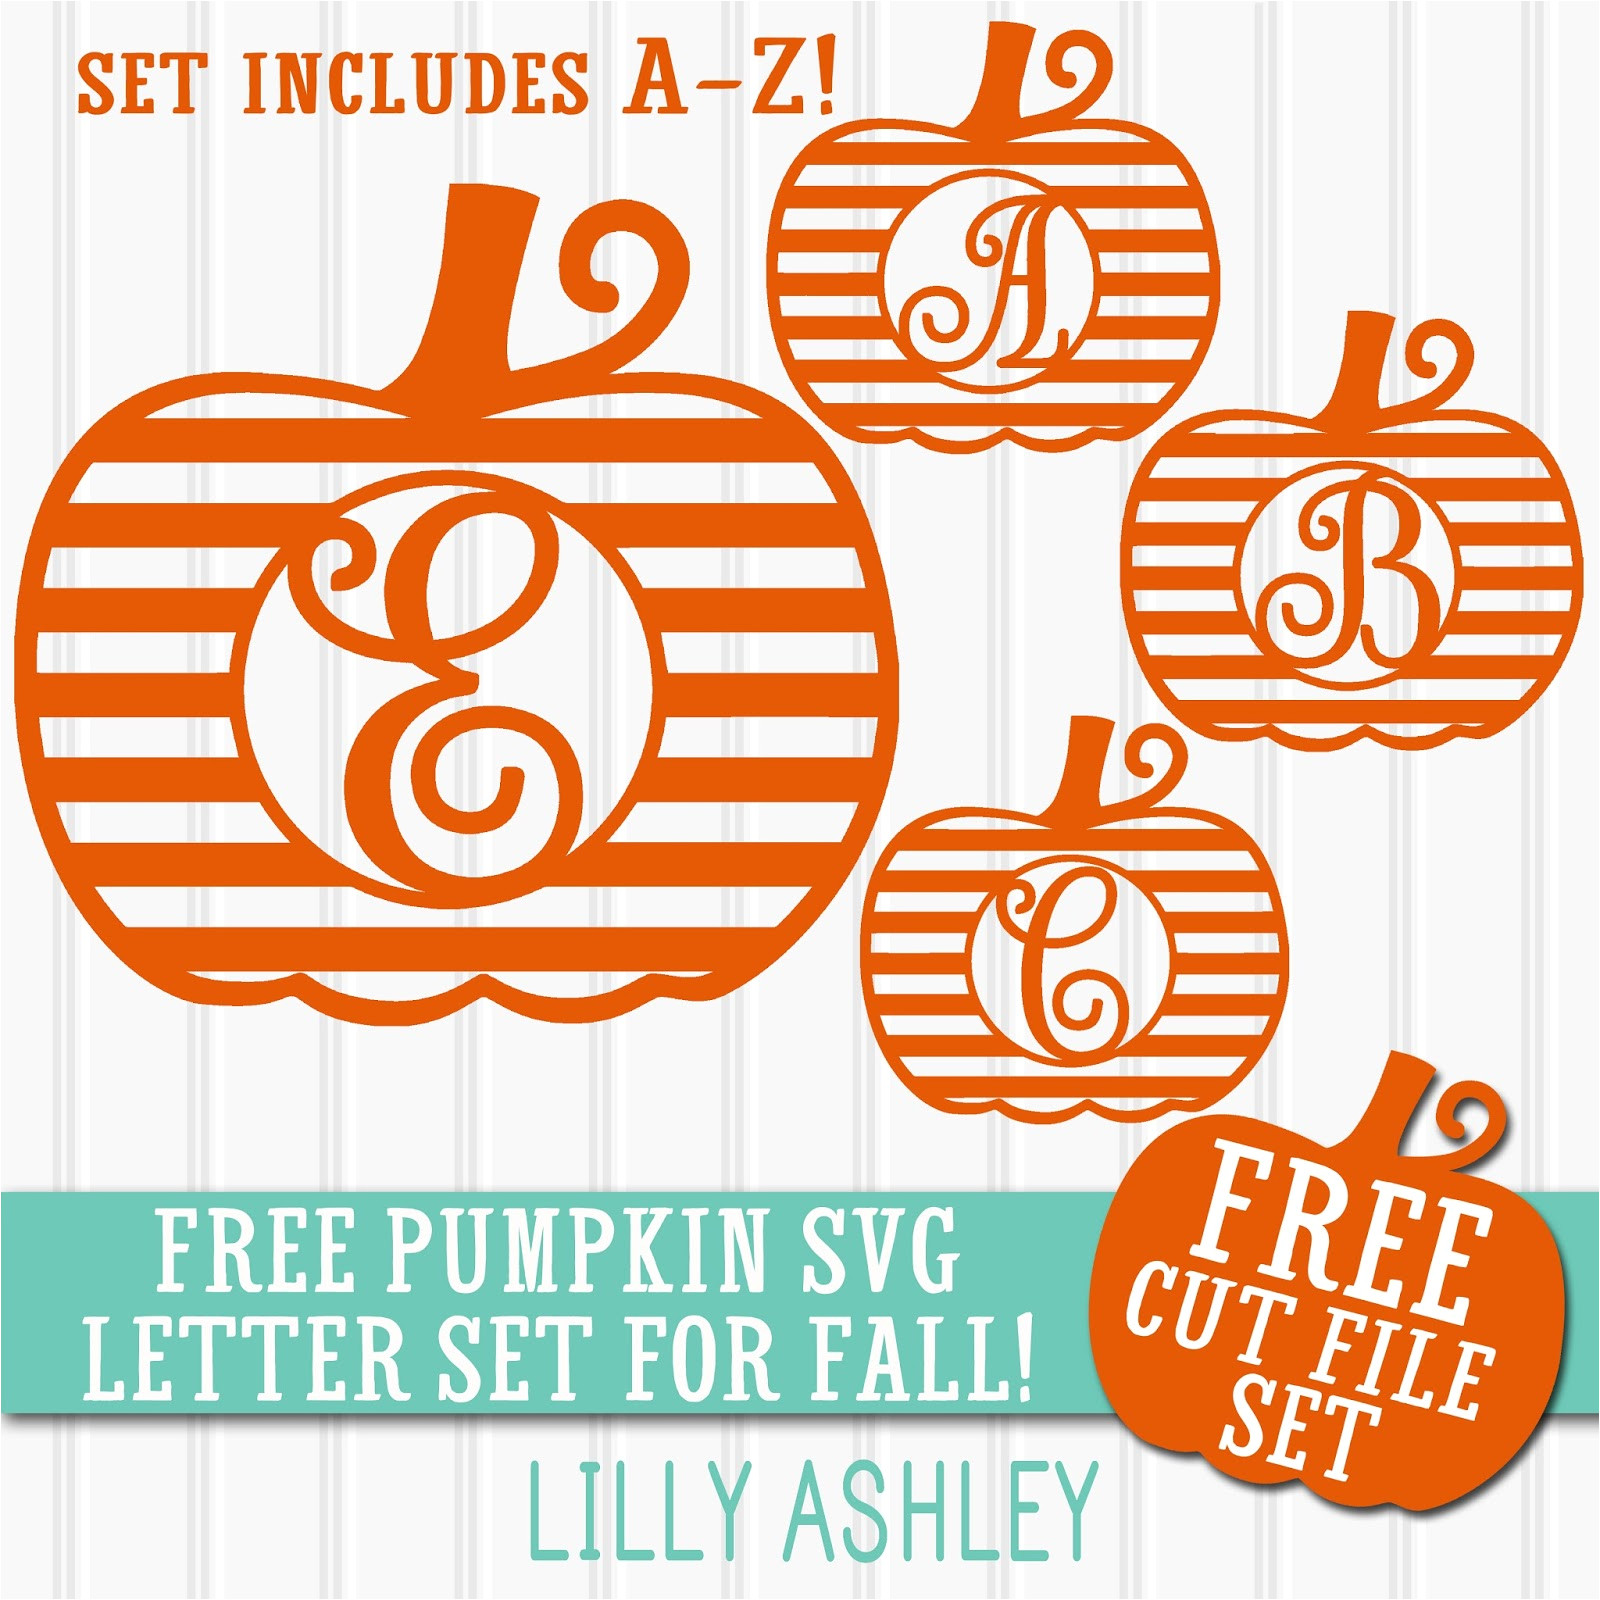 free pumpkin svg letter set